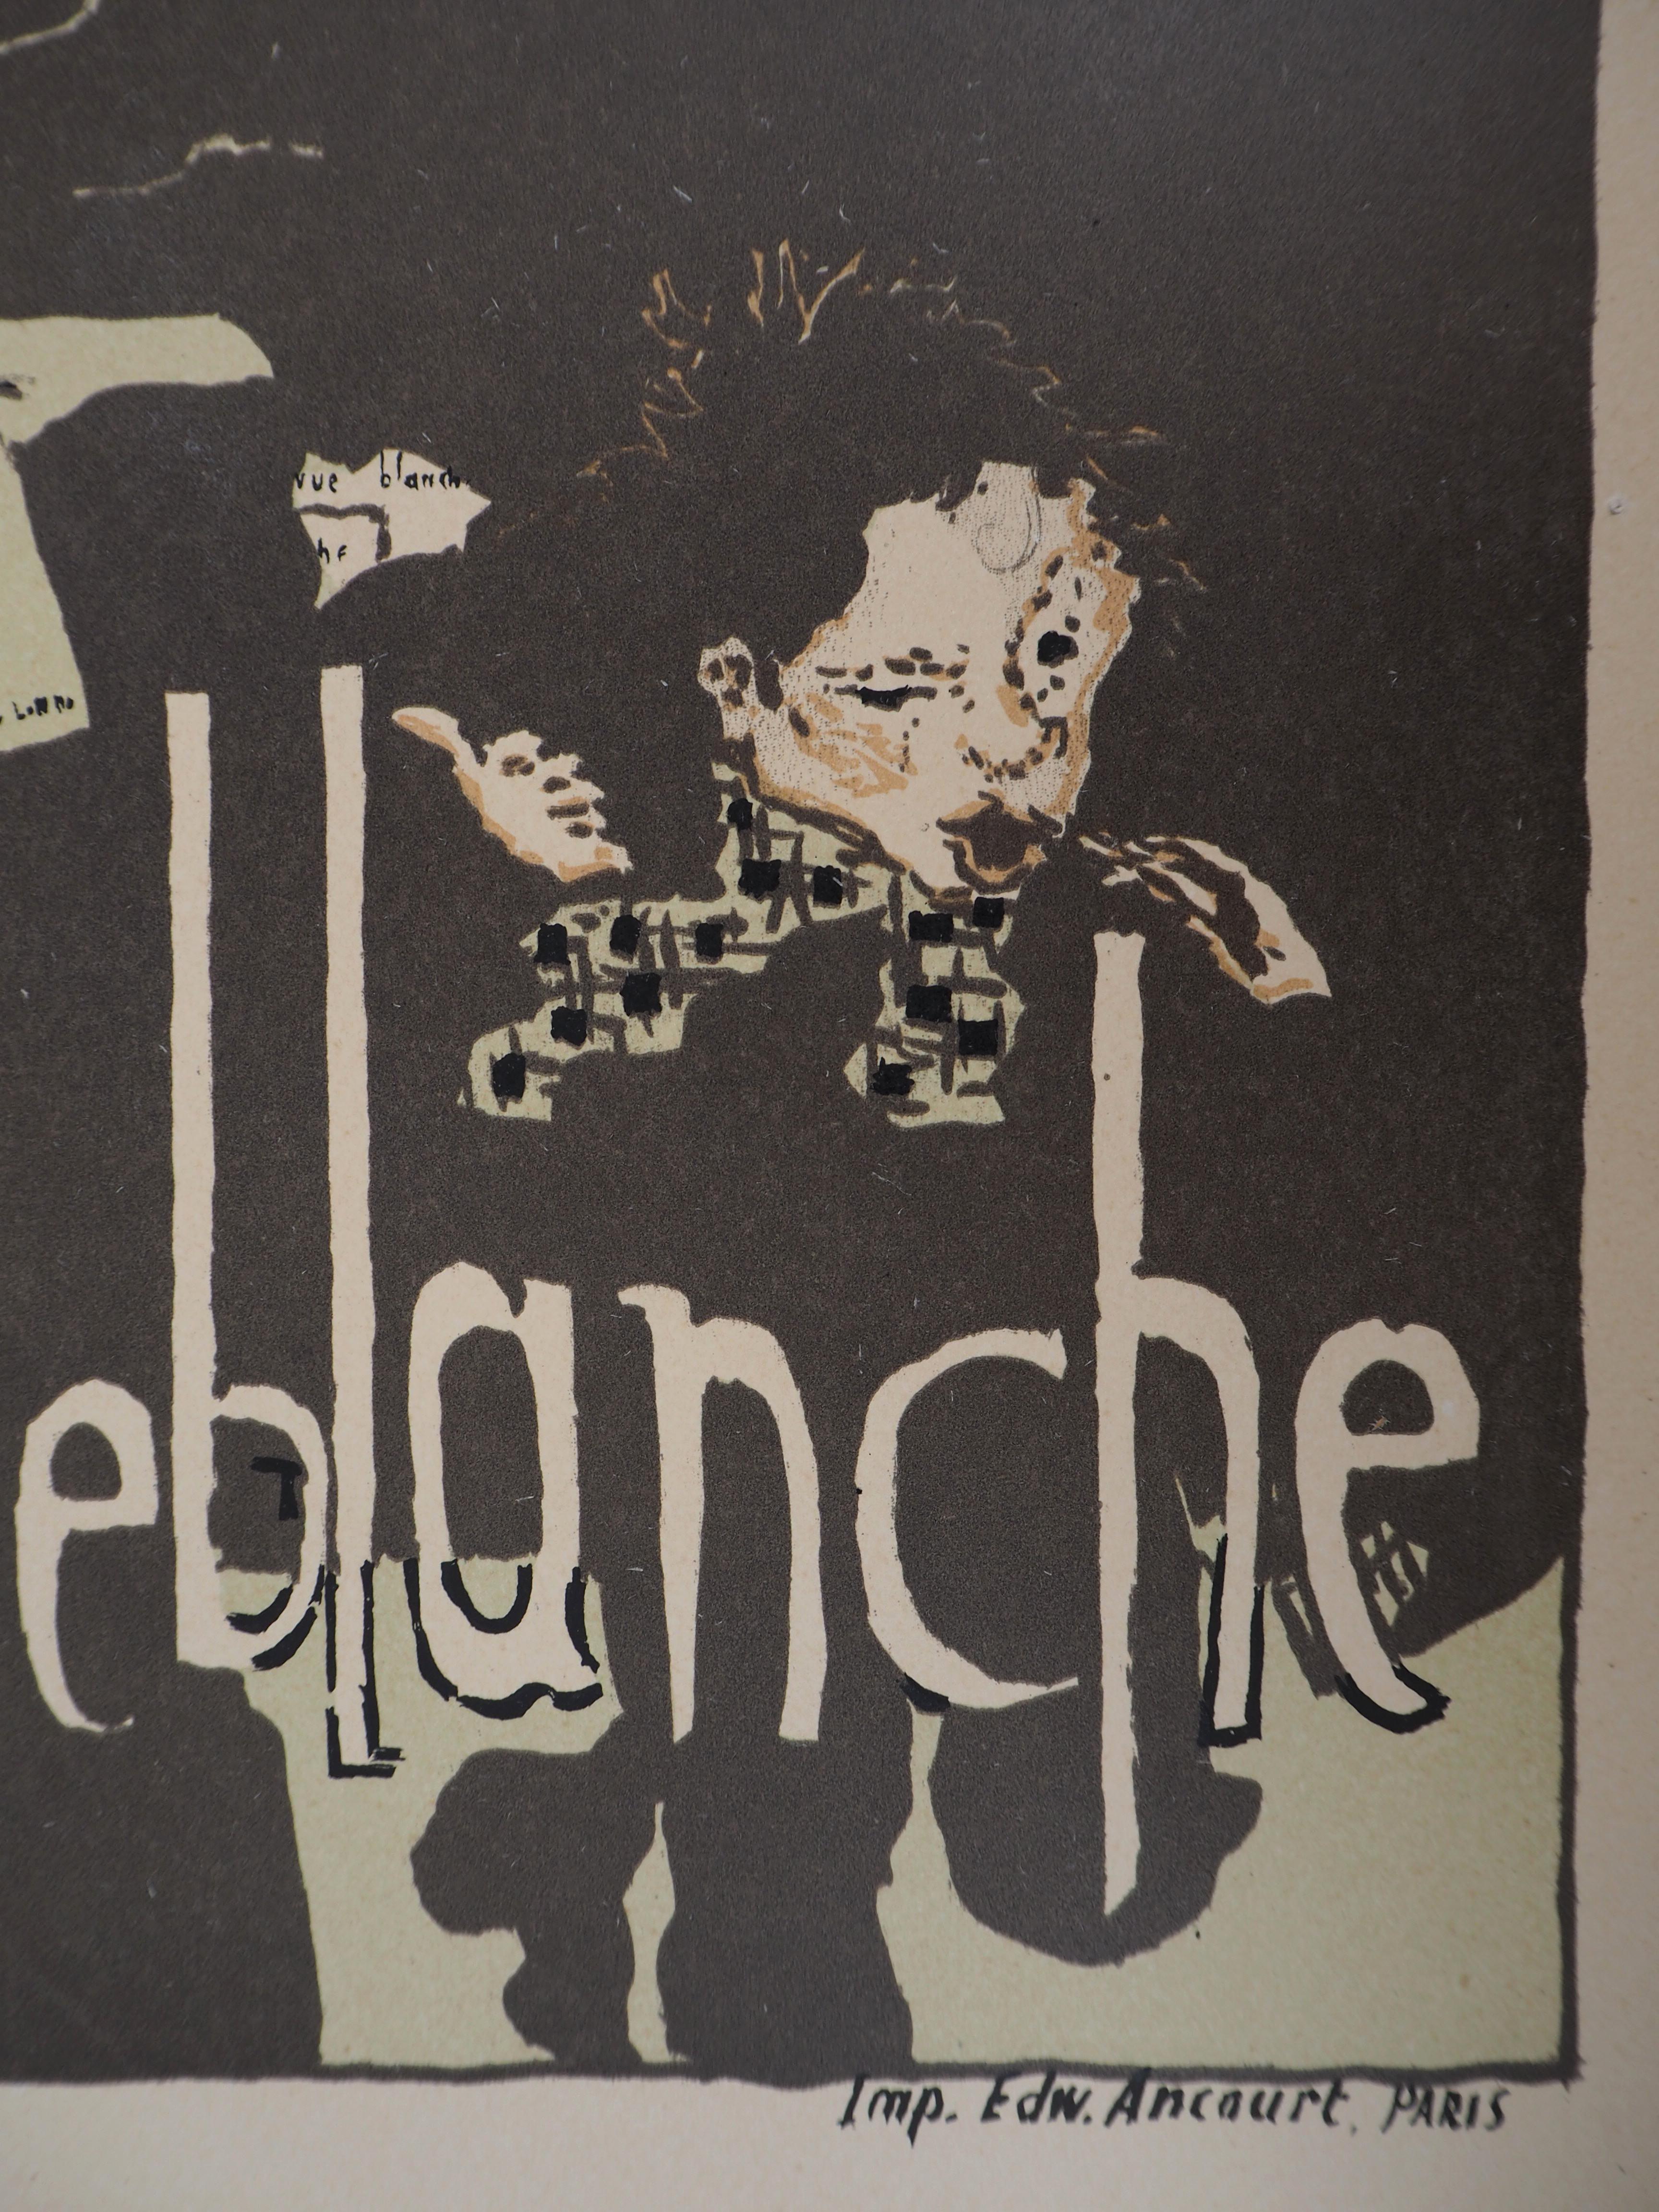  Revue Blanche : The Elegant Woman- Lithograph (Les Maîtres de l'Affiche), 1895 1